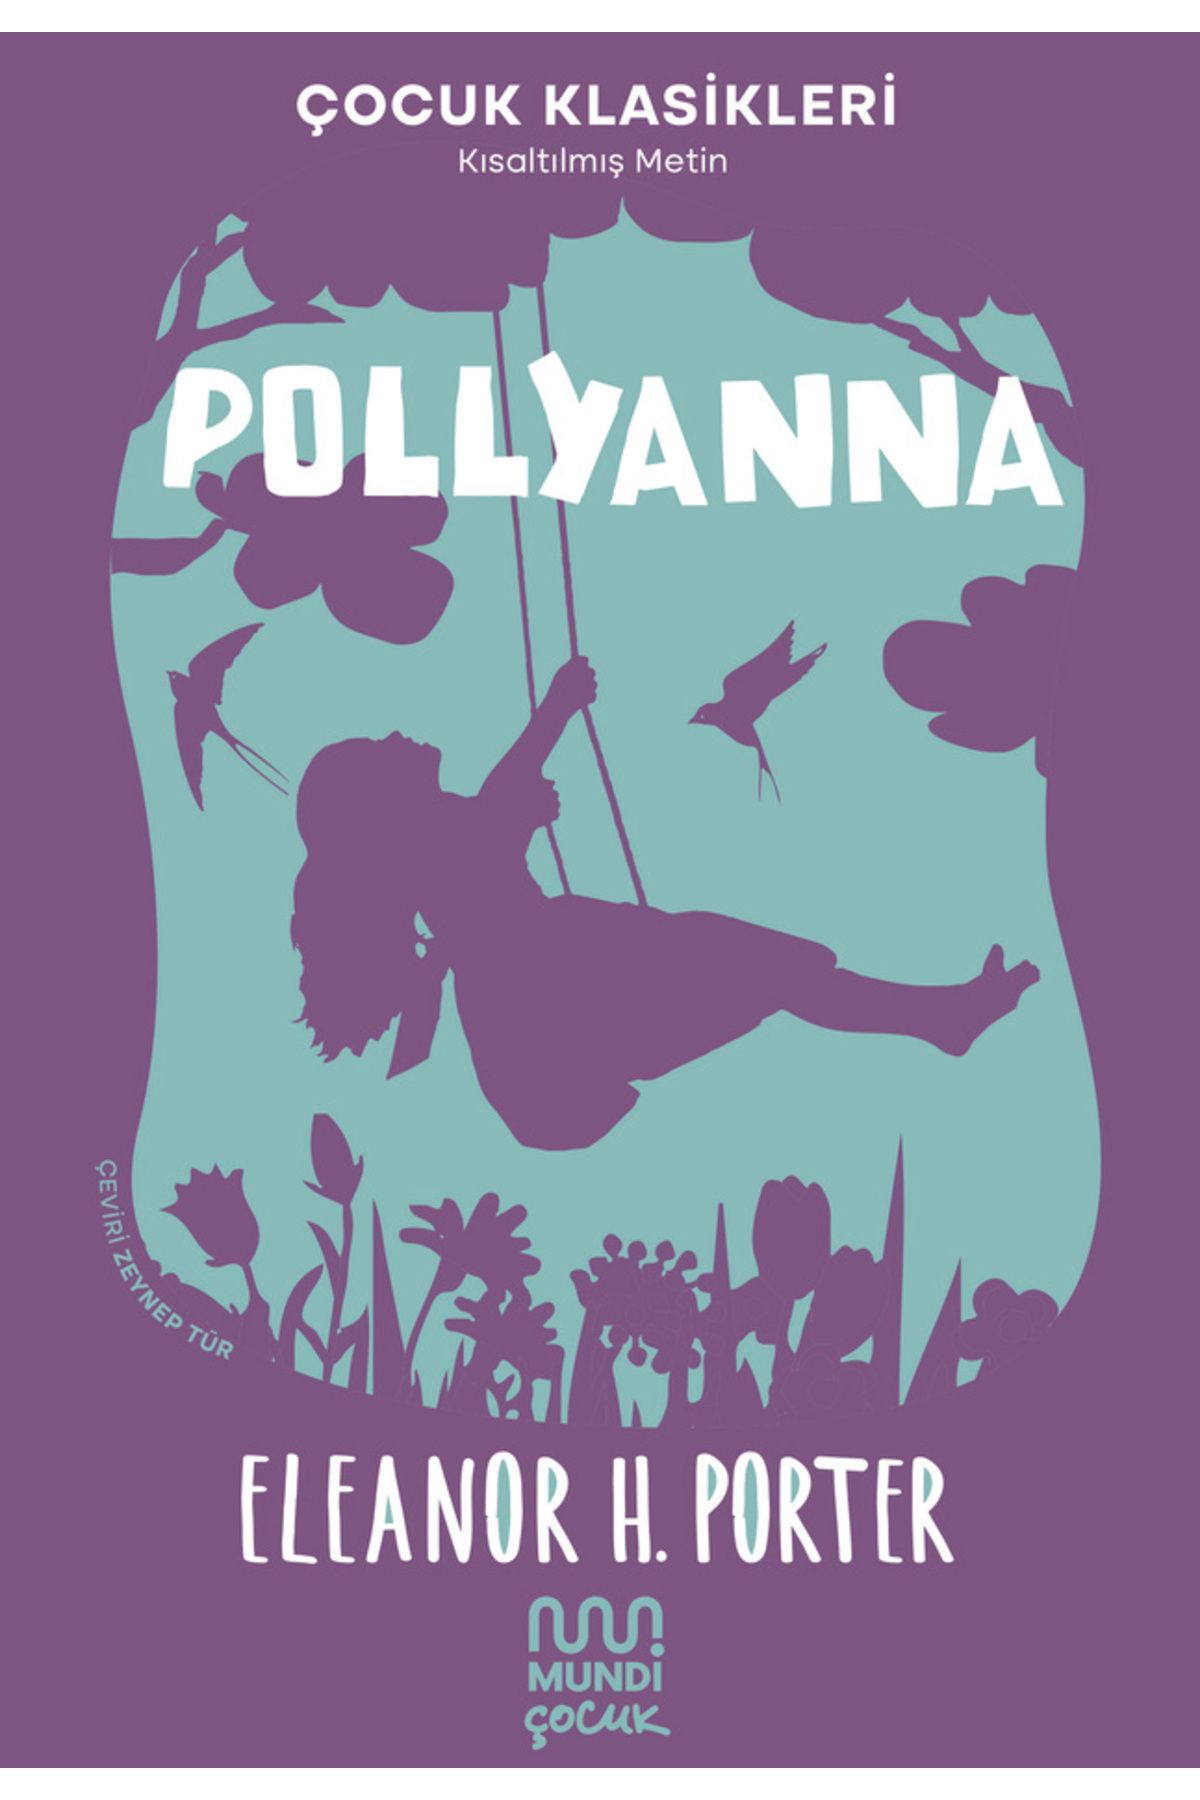 MUNDİ Pollyanna